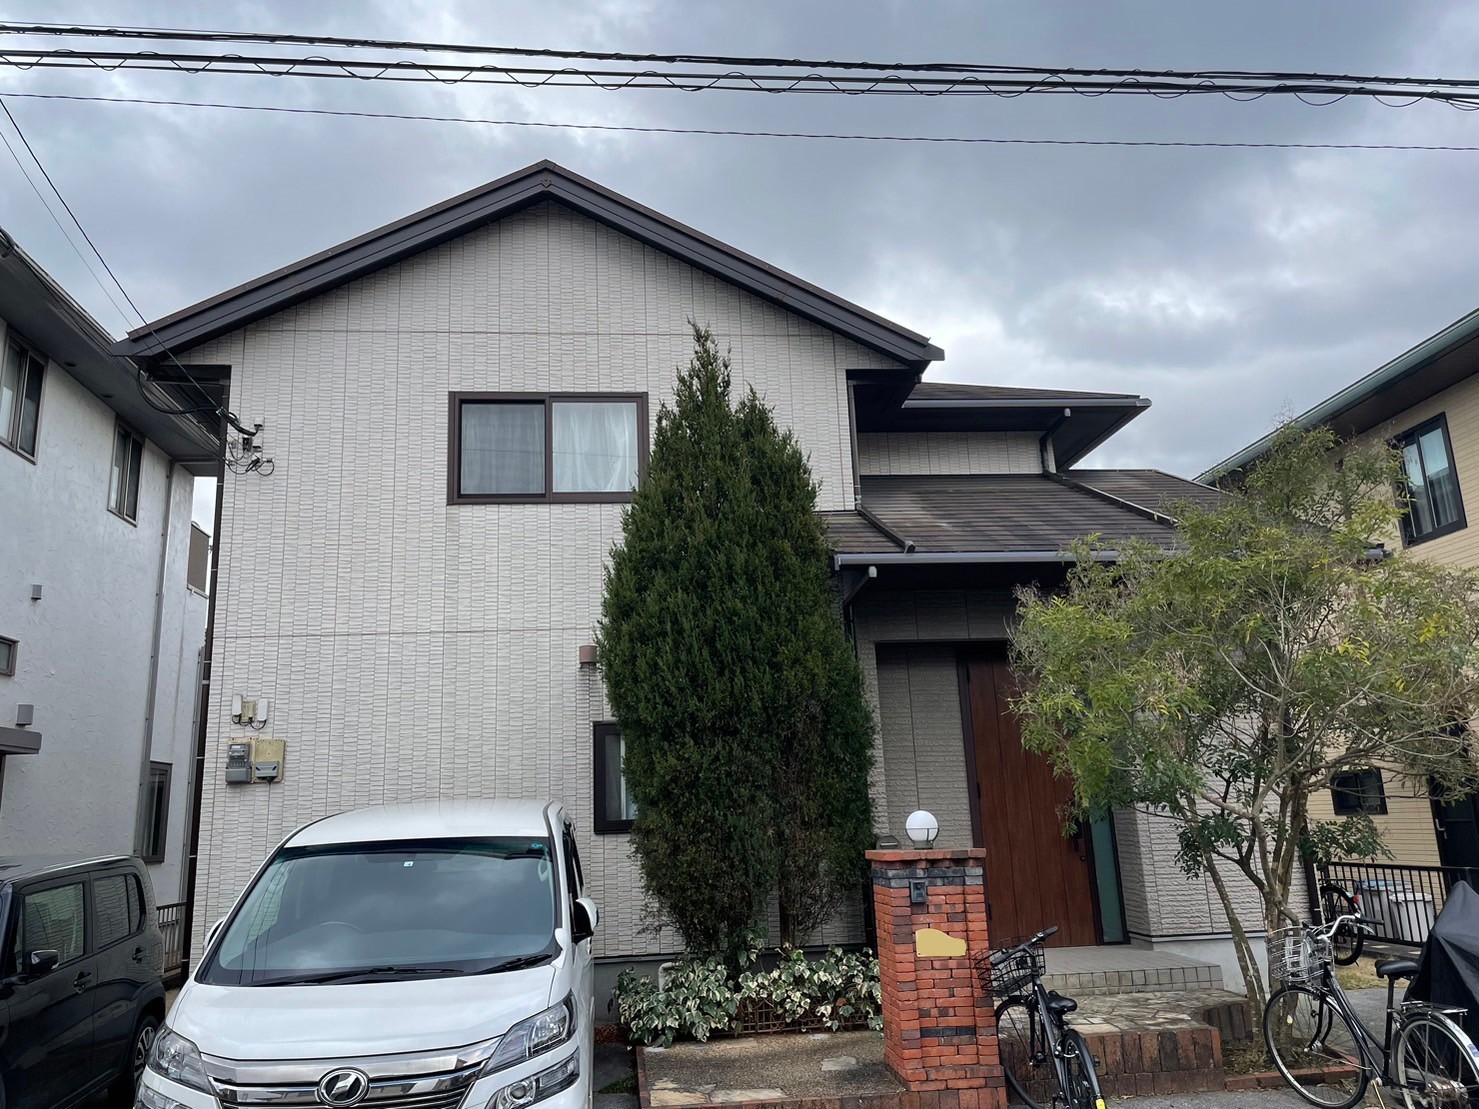 福岡県小郡市希みが丘のS様邸で外壁屋根ともに発生している割れを改善し、エシカルプロクールのフッ素塗料を使用した塗装を行います。3/25完成です。【HPより】